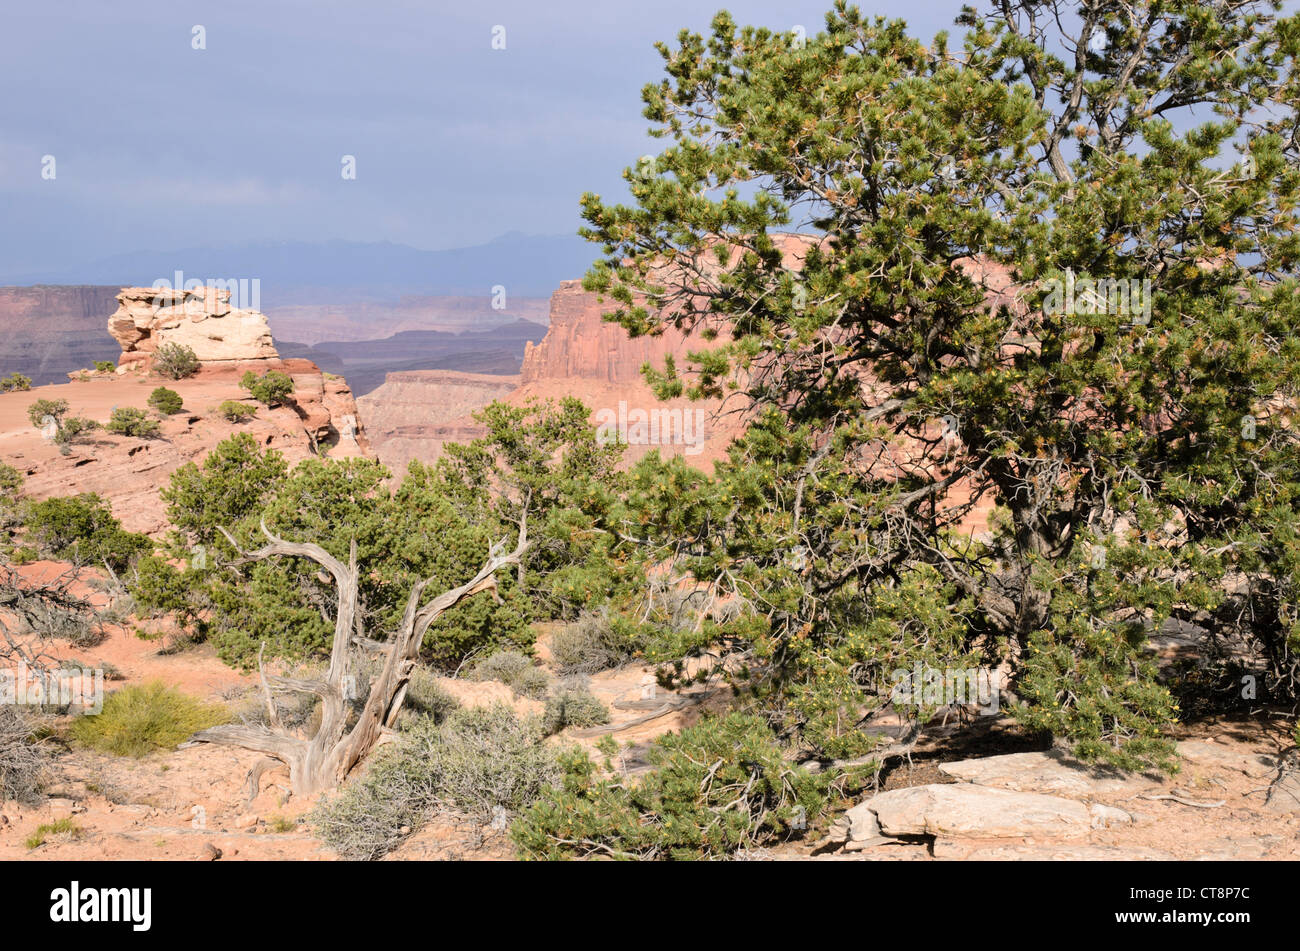 Pinyon pine (Pinus edulis) and Utah juniper (Juniperus osteosperma), Canyonlands National Park, Utah, USA Stock Photo